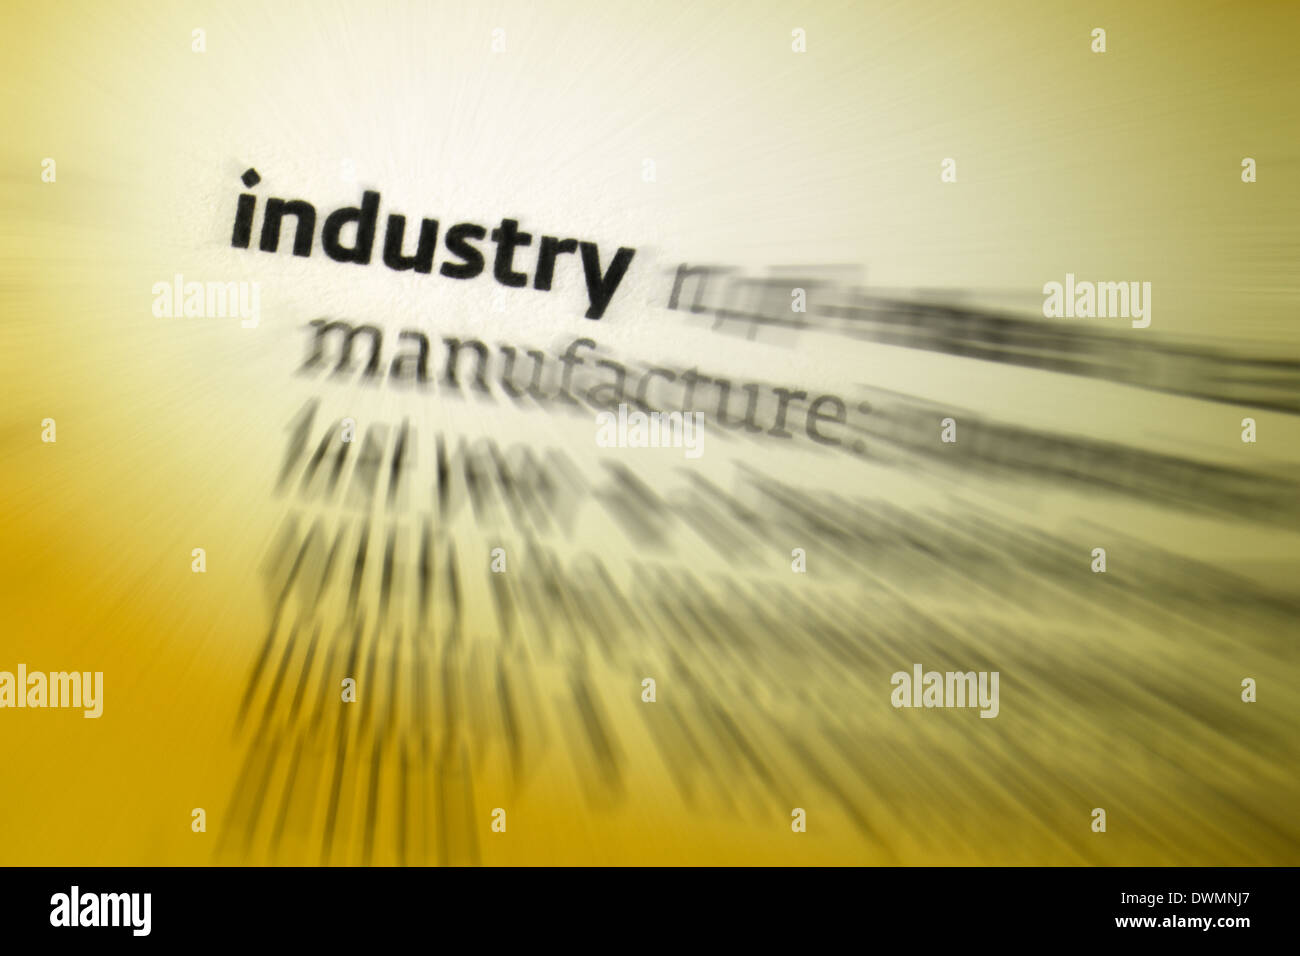 Industrie - wirtschaftliche Tätigkeit befasst sich mit der Verarbeitung der Rohstoffe und Herstellung von waren in den Fabriken. Stockfoto